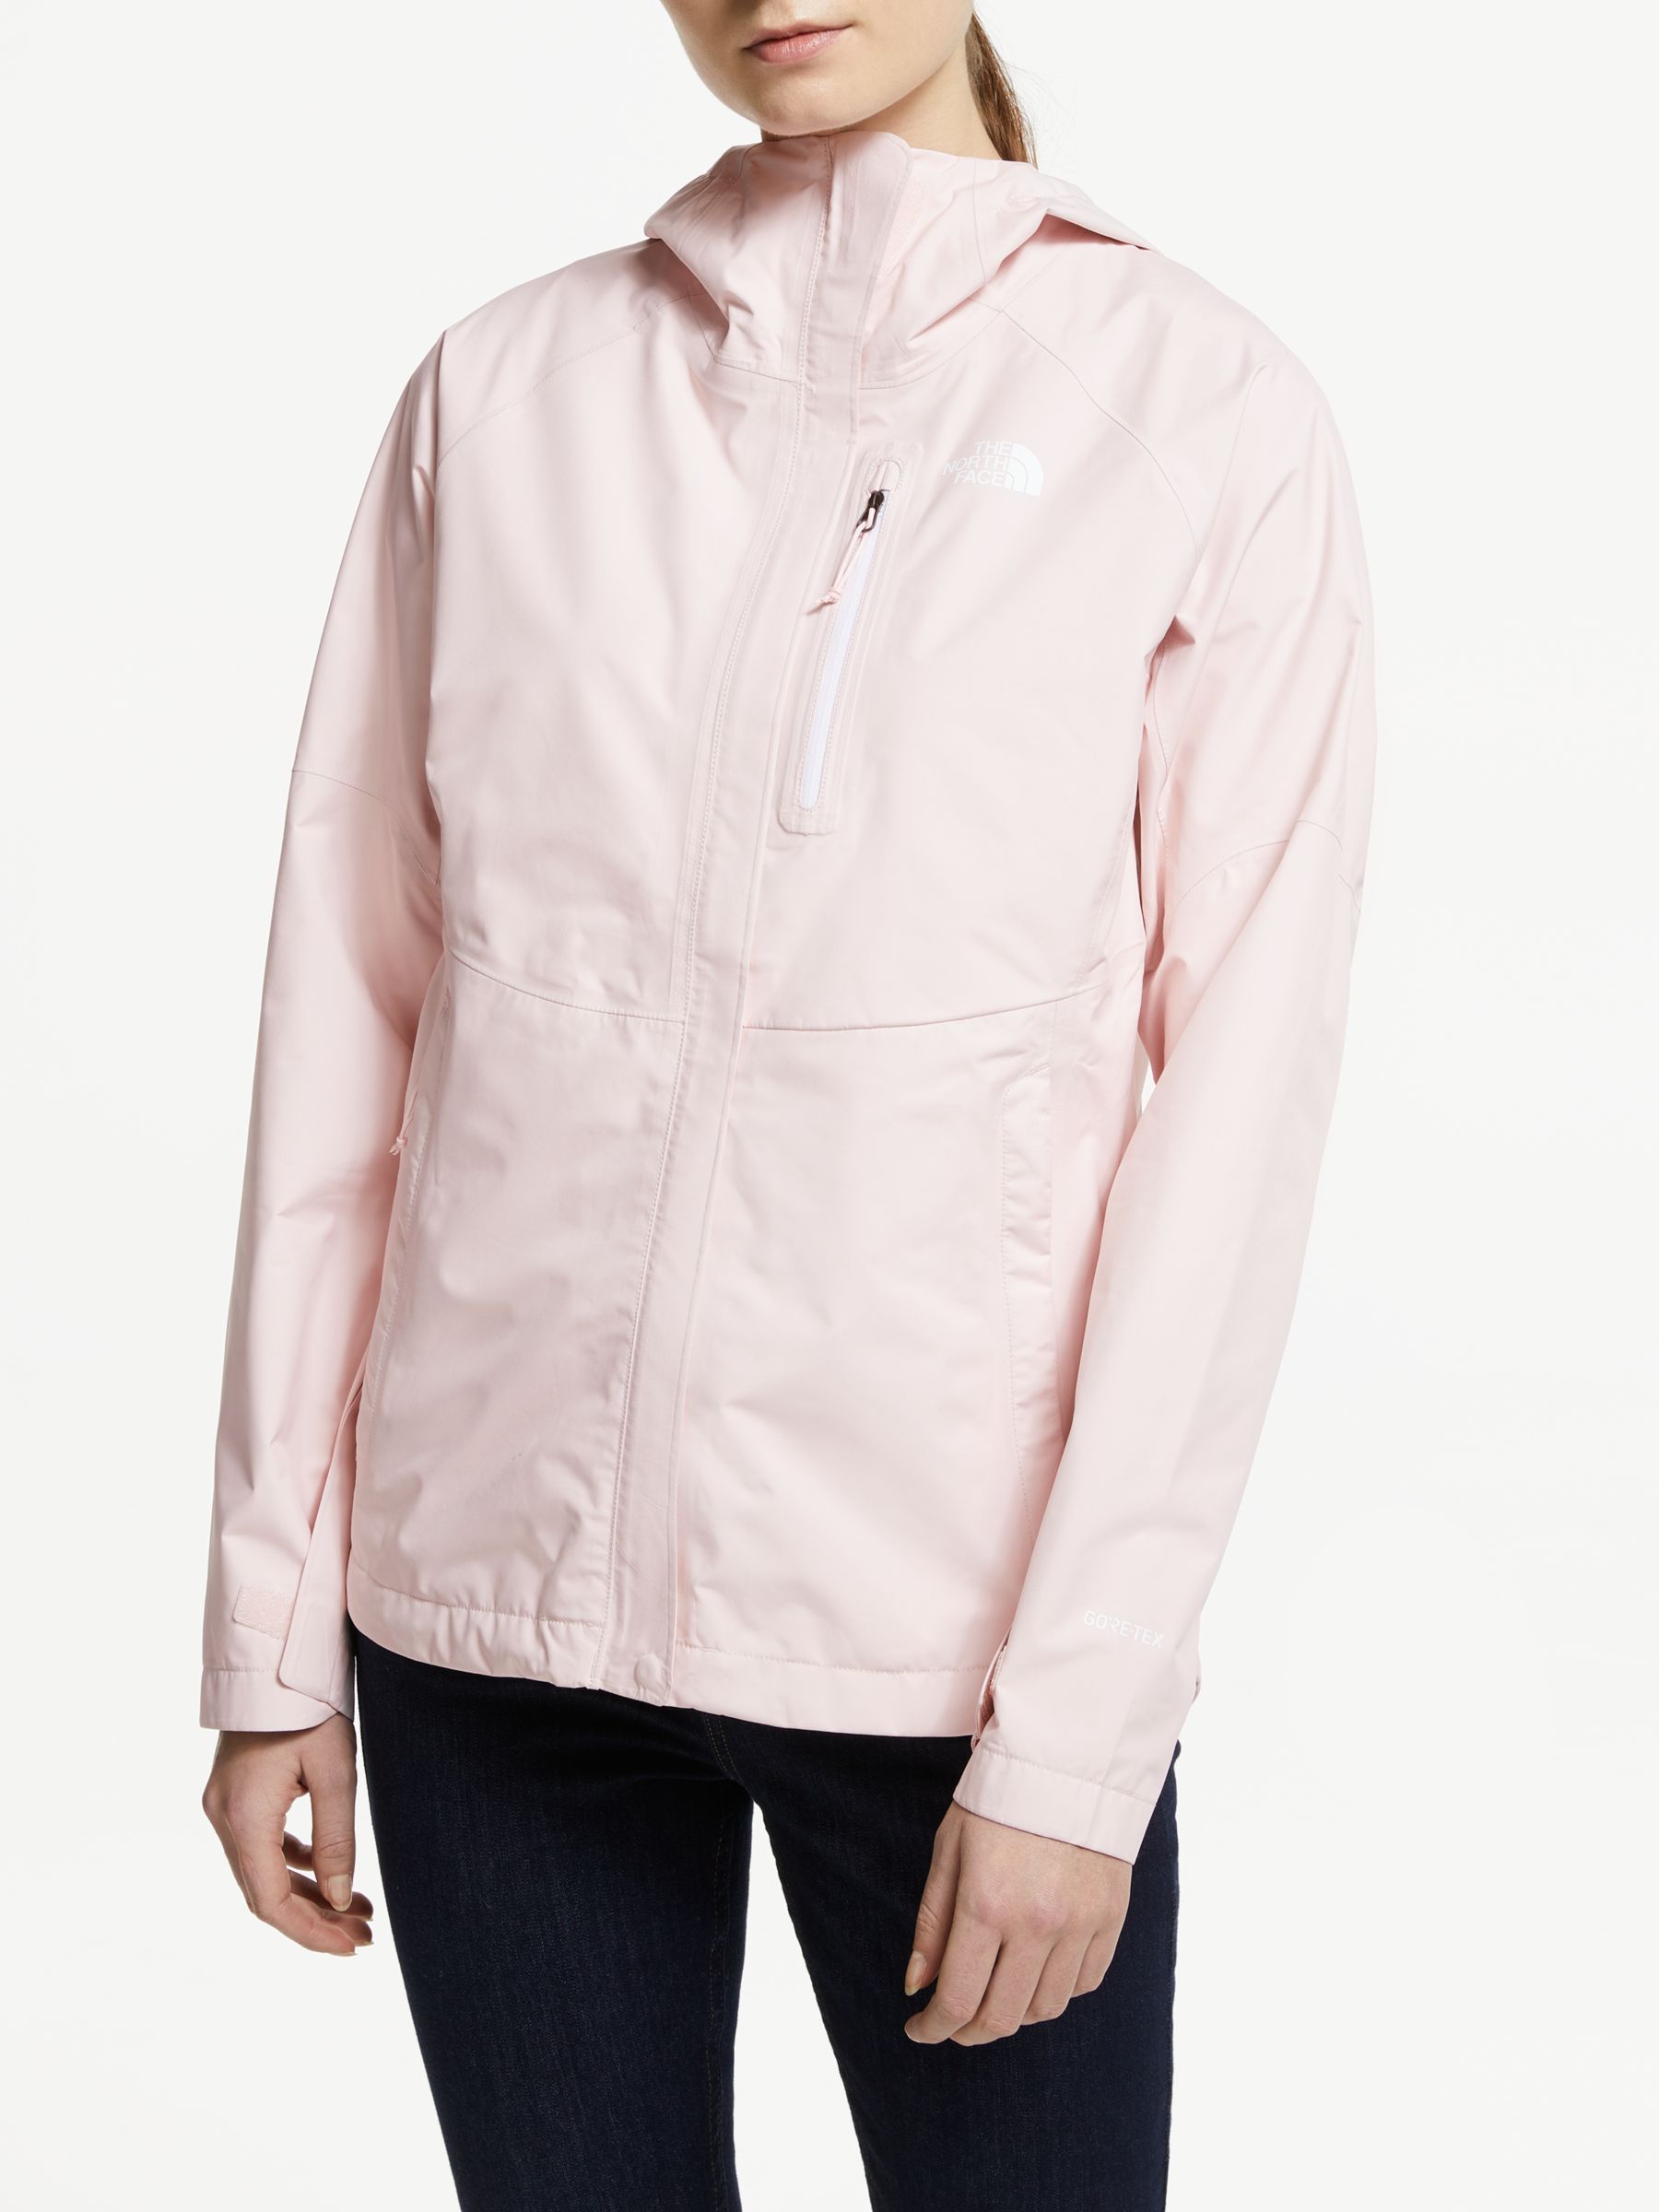 north face pink salt jacket